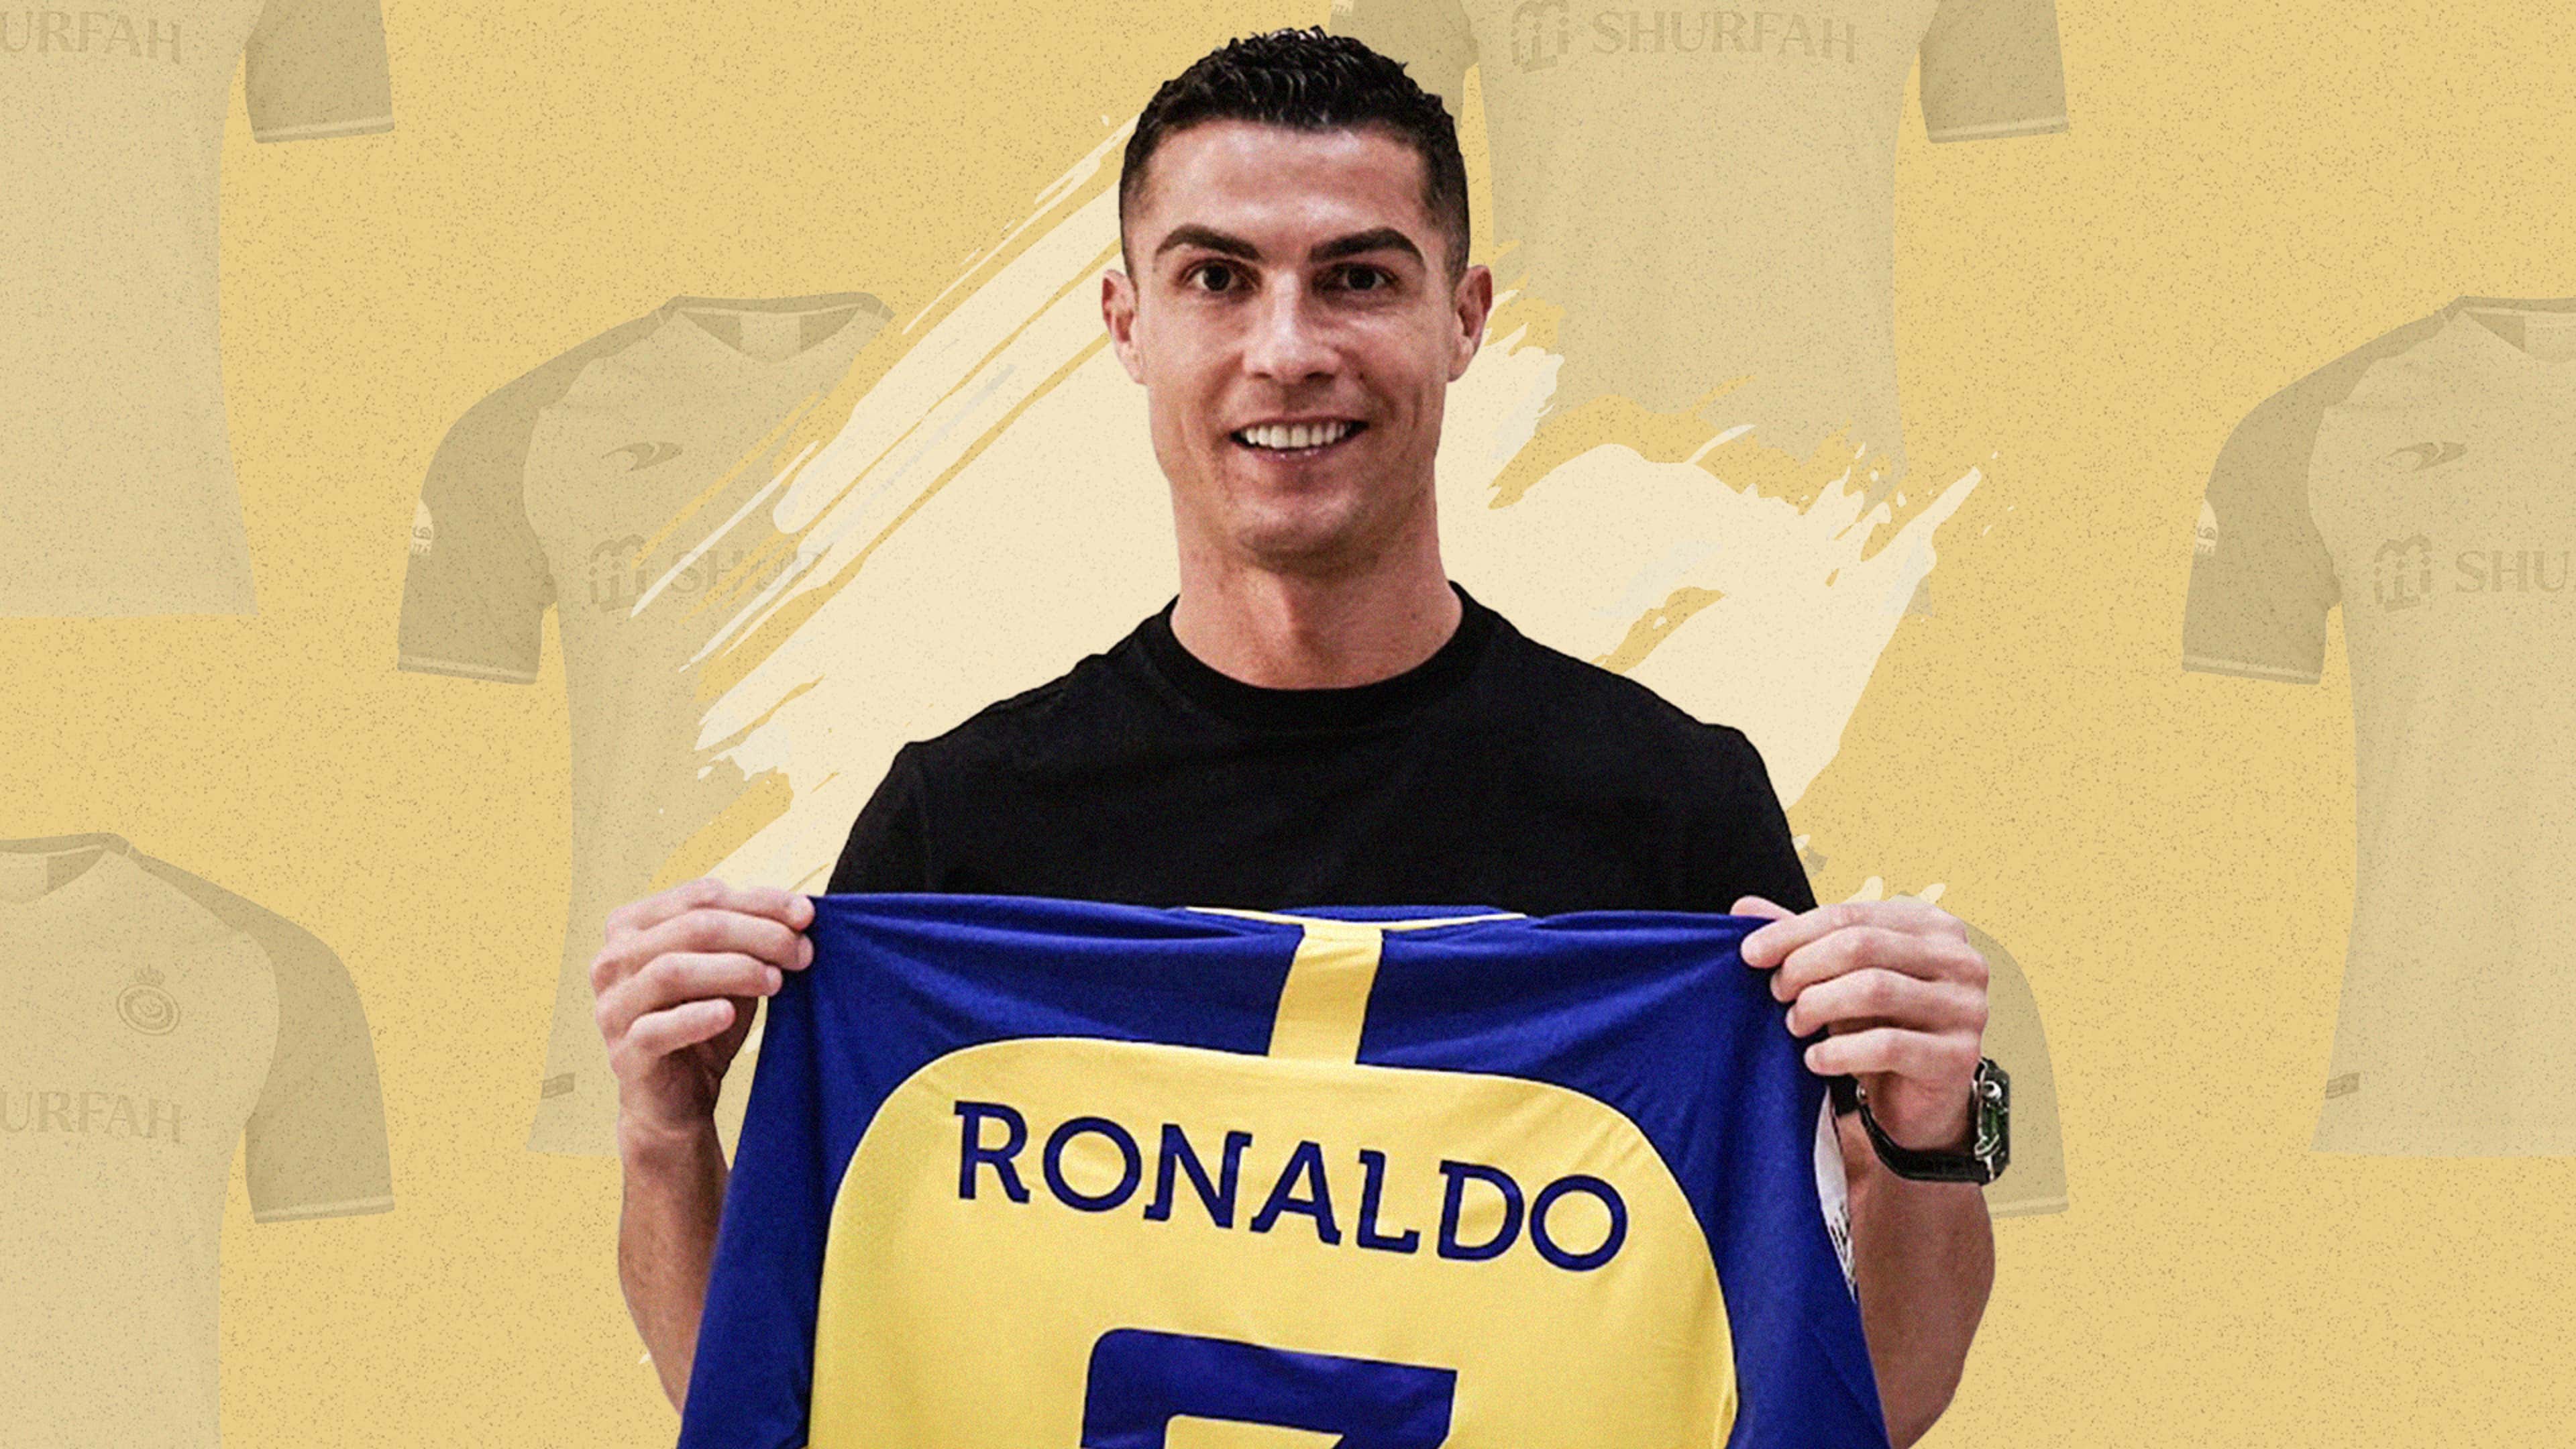 Cómo comprar la camiseta de Cristiano Ronaldo de Al Nassr?